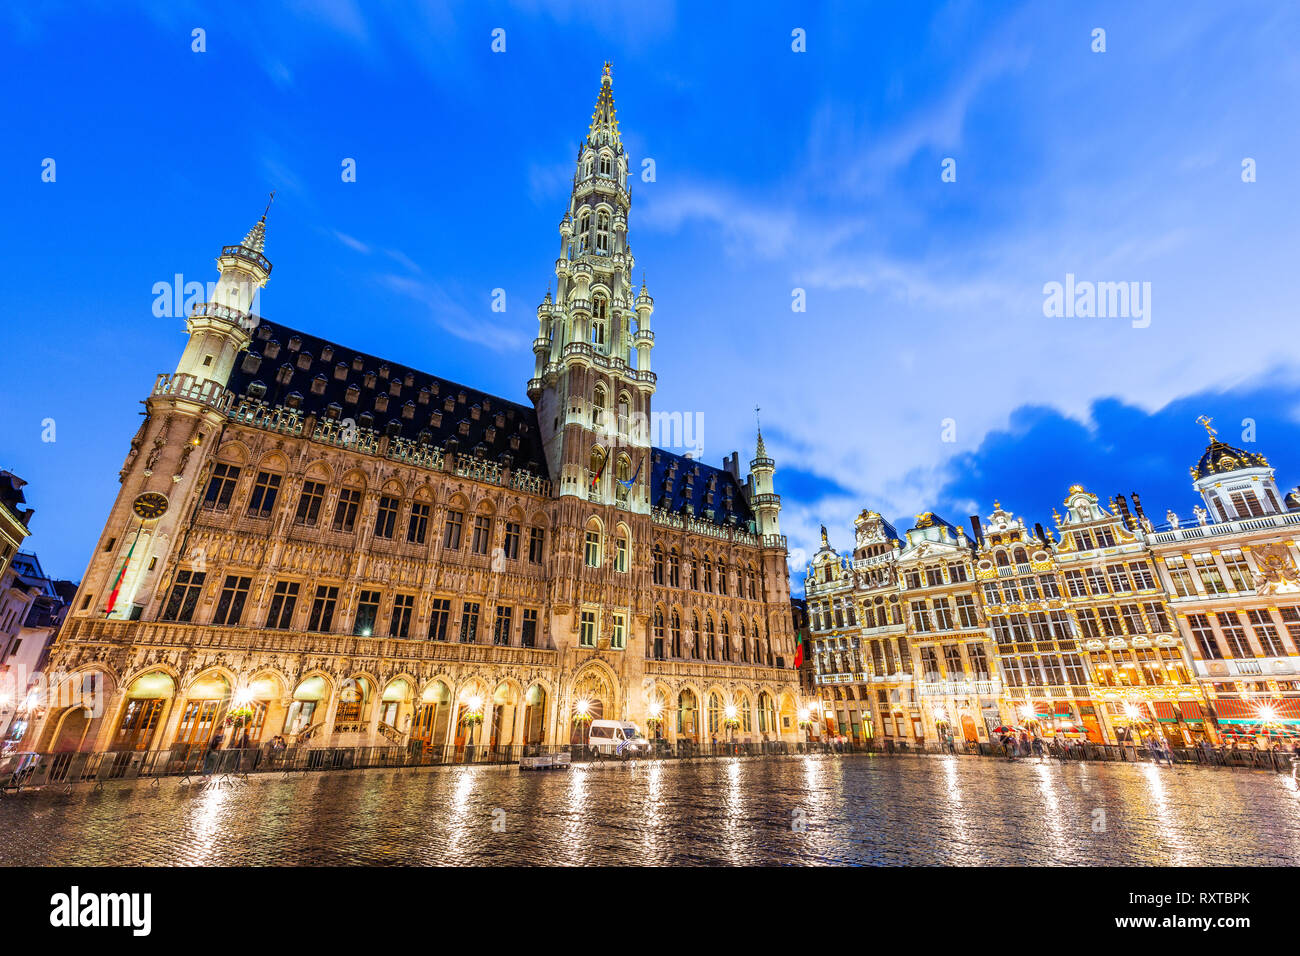 Brüssel, Belgien. Grand Place. Marktplatz von gildenhalle umgeben. Stockfoto